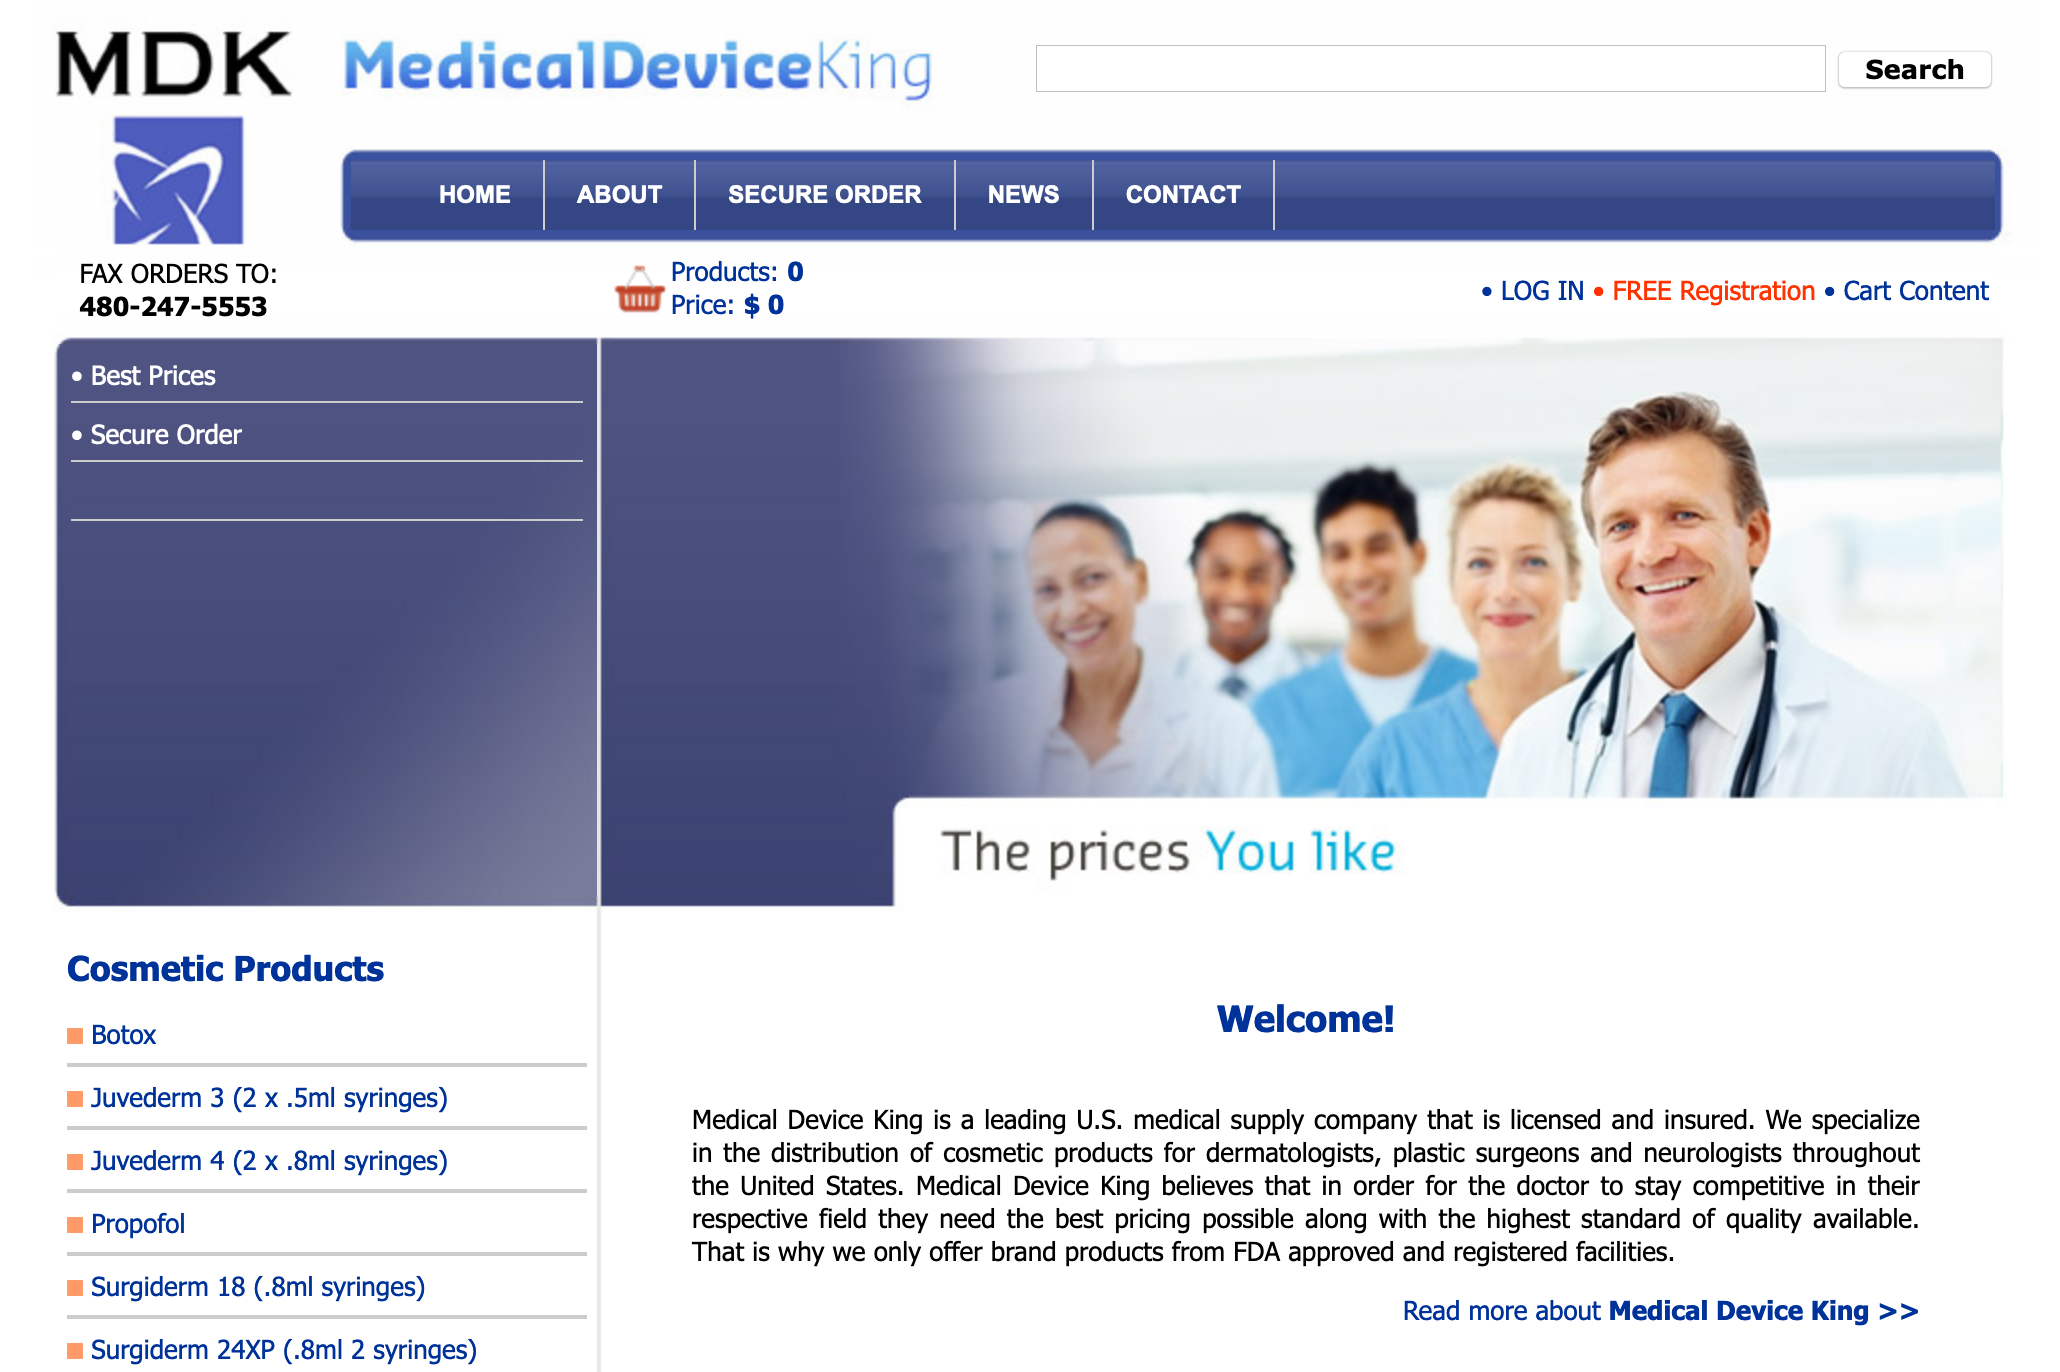 Medical Device King website, 2011